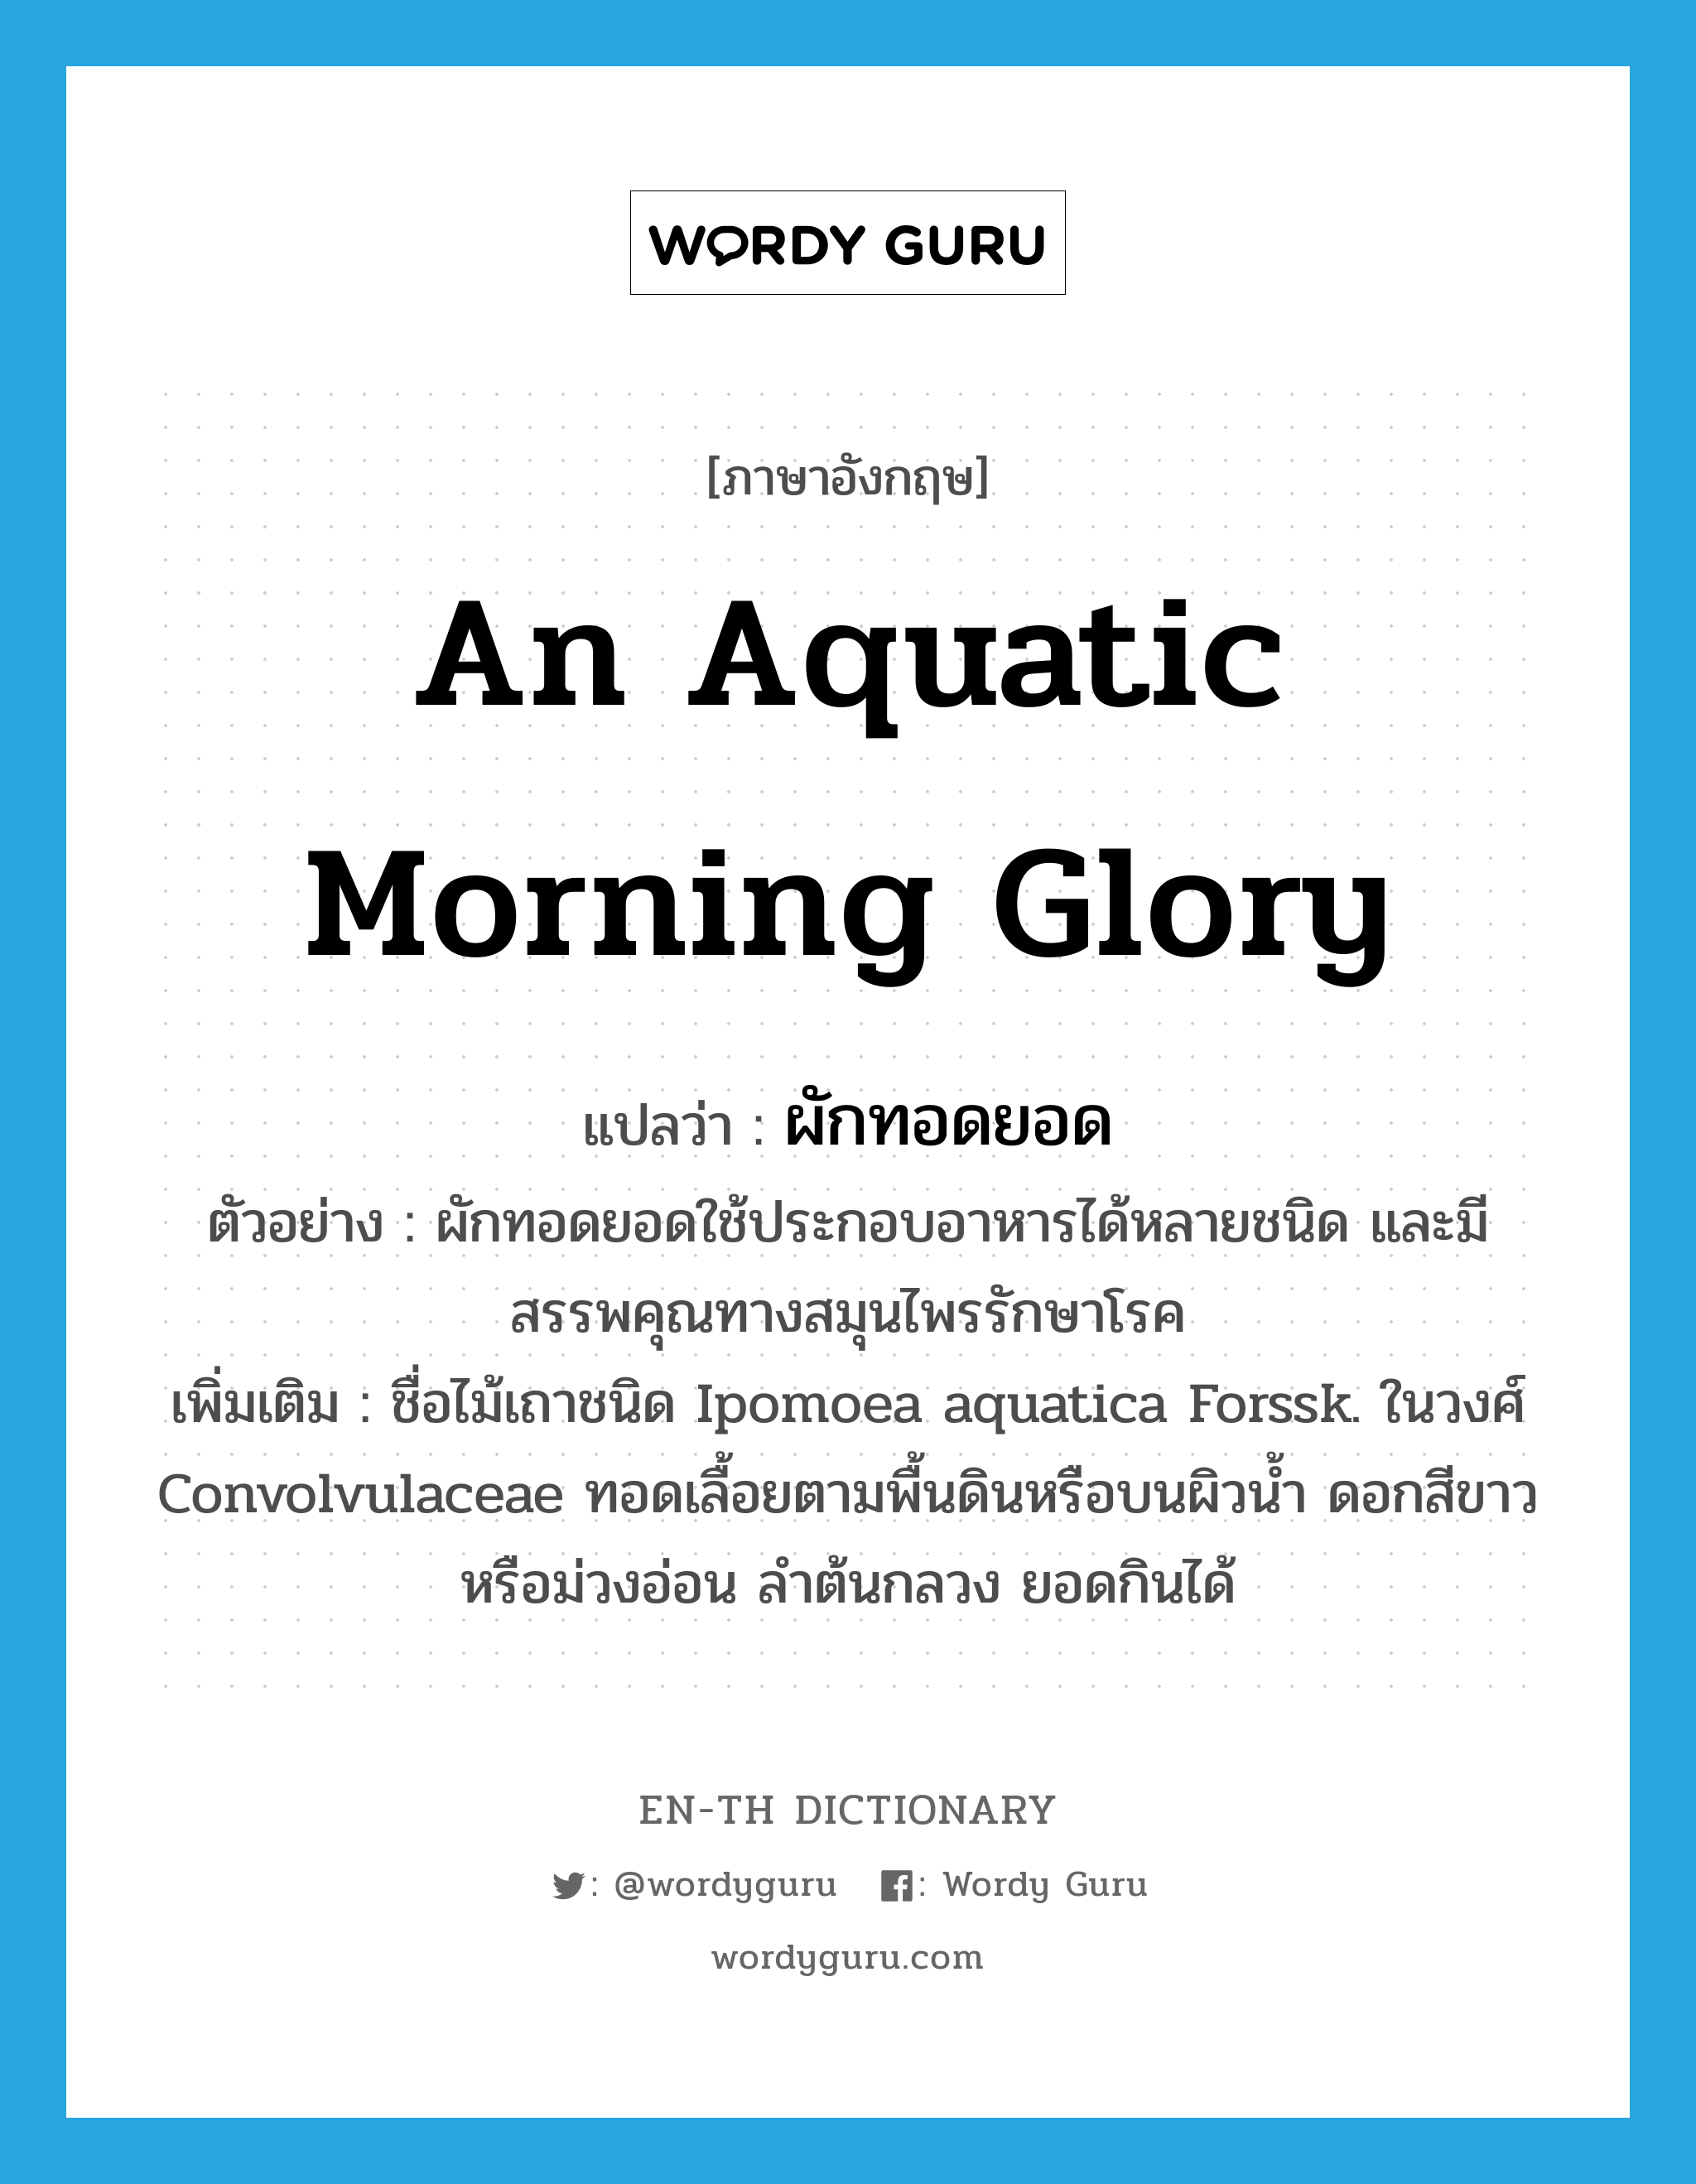 an aquatic morning glory แปลว่า?, คำศัพท์ภาษาอังกฤษ an aquatic morning glory แปลว่า ผักทอดยอด ประเภท N ตัวอย่าง ผักทอดยอดใช้ประกอบอาหารได้หลายชนิด และมีสรรพคุณทางสมุนไพรรักษาโรค เพิ่มเติม ชื่อไม้เถาชนิด Ipomoea aquatica Forssk. ในวงศ์ Convolvulaceae ทอดเลื้อยตามพื้นดินหรือบนผิวน้ำ ดอกสีขาวหรือม่วงอ่อน ลำต้นกลวง ยอดกินได้ หมวด N